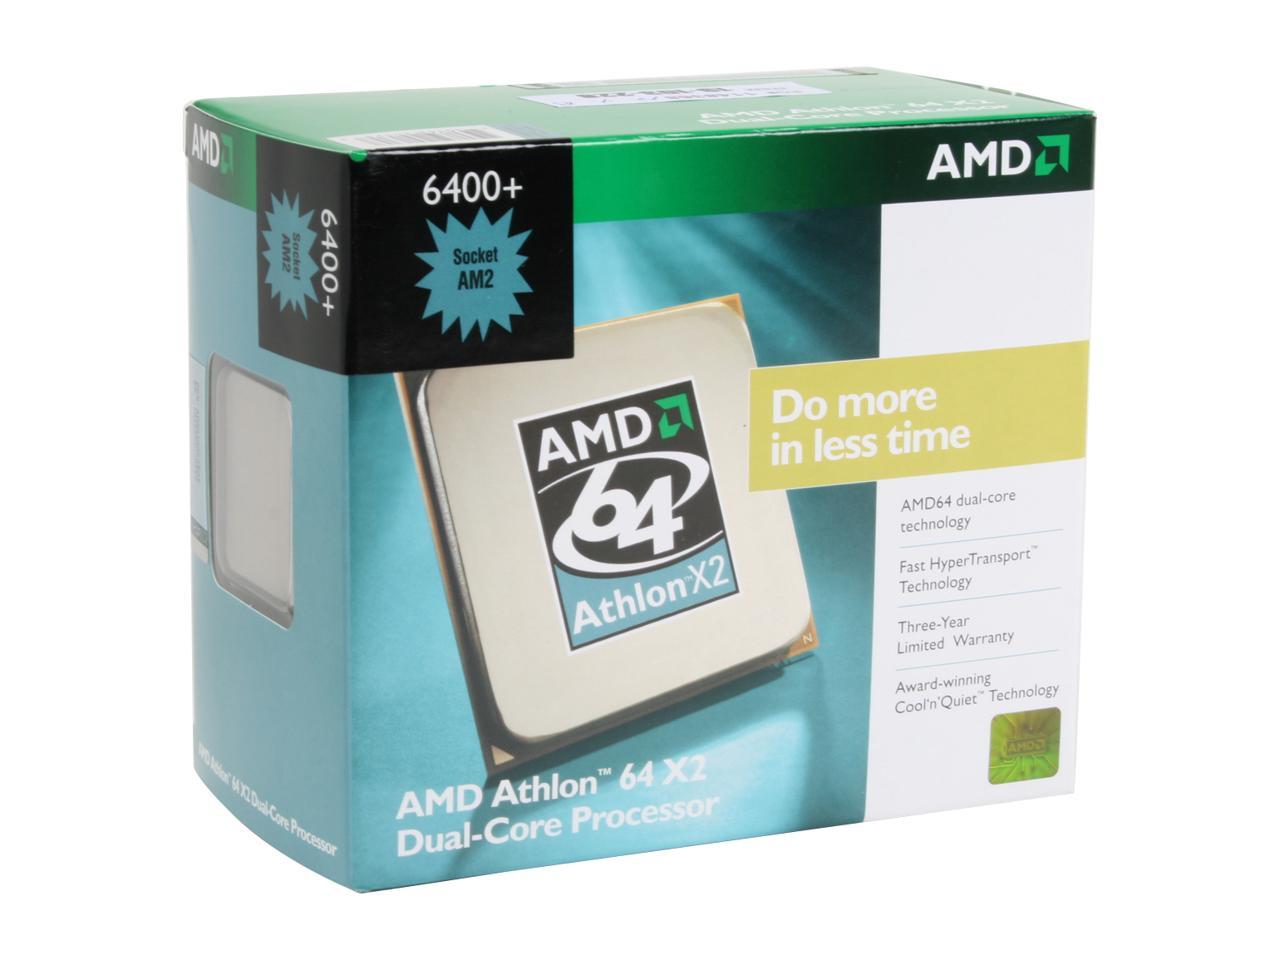 Athlon x2 сокет. AMD Athlon 64 x2 6400+. AMD Athlon x2 Dual Core. AMD Athlon 64 x2 сокет. AMD Athlon 64 x2 Dual Core 6400+.